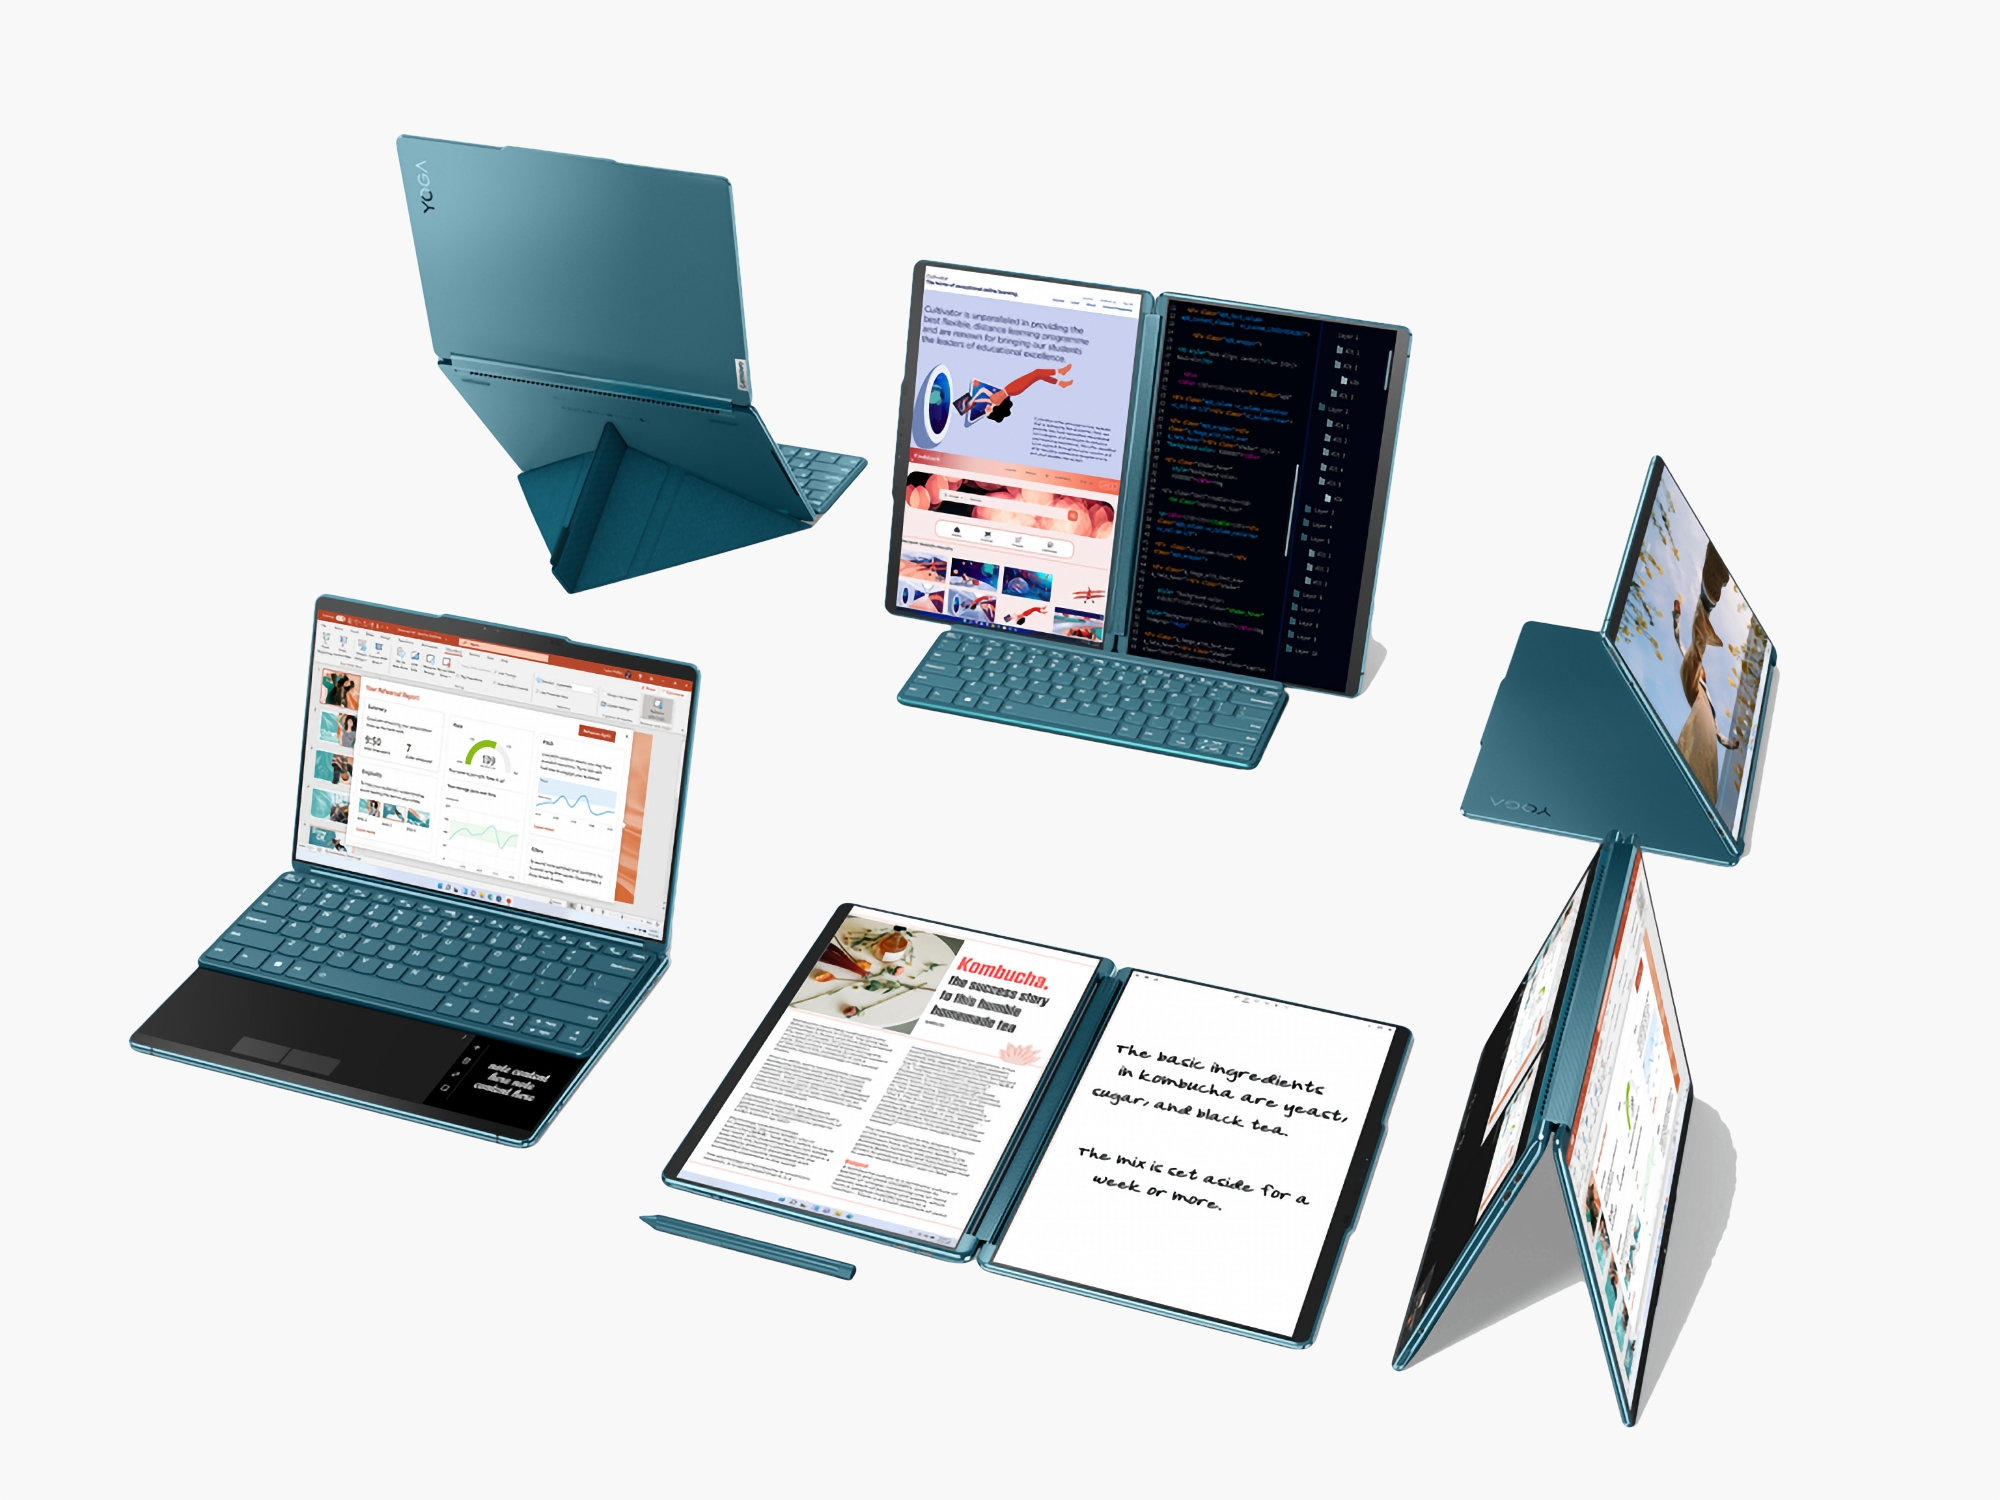 Lenovo Yoga Book 9i z dwoma wyświetlaczami OLED zadebiutował w Europie i USA